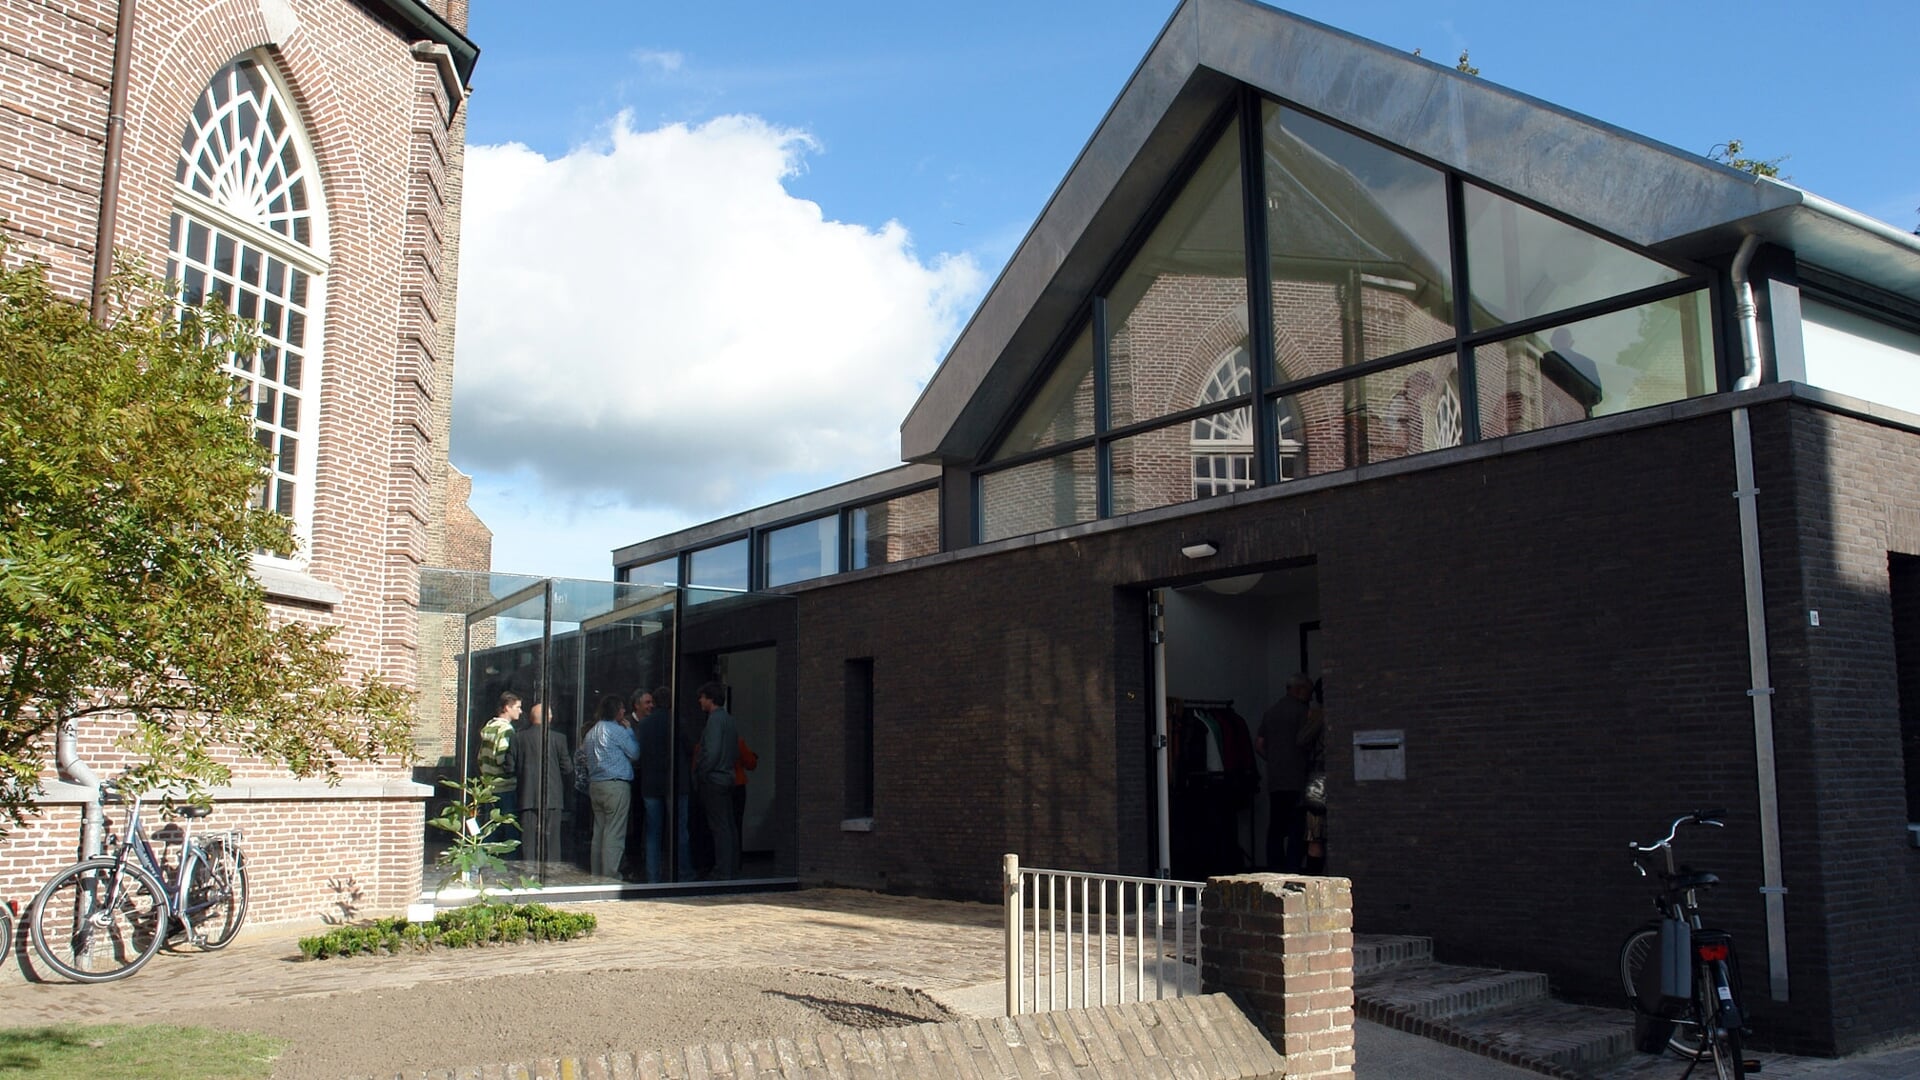 Ontmoetingscentrum De Schakel is te vinden aan de Clarissenstraat en is met een glazen gang verbonden met de naastgelegen kerk van de Protestantse Gemeente.